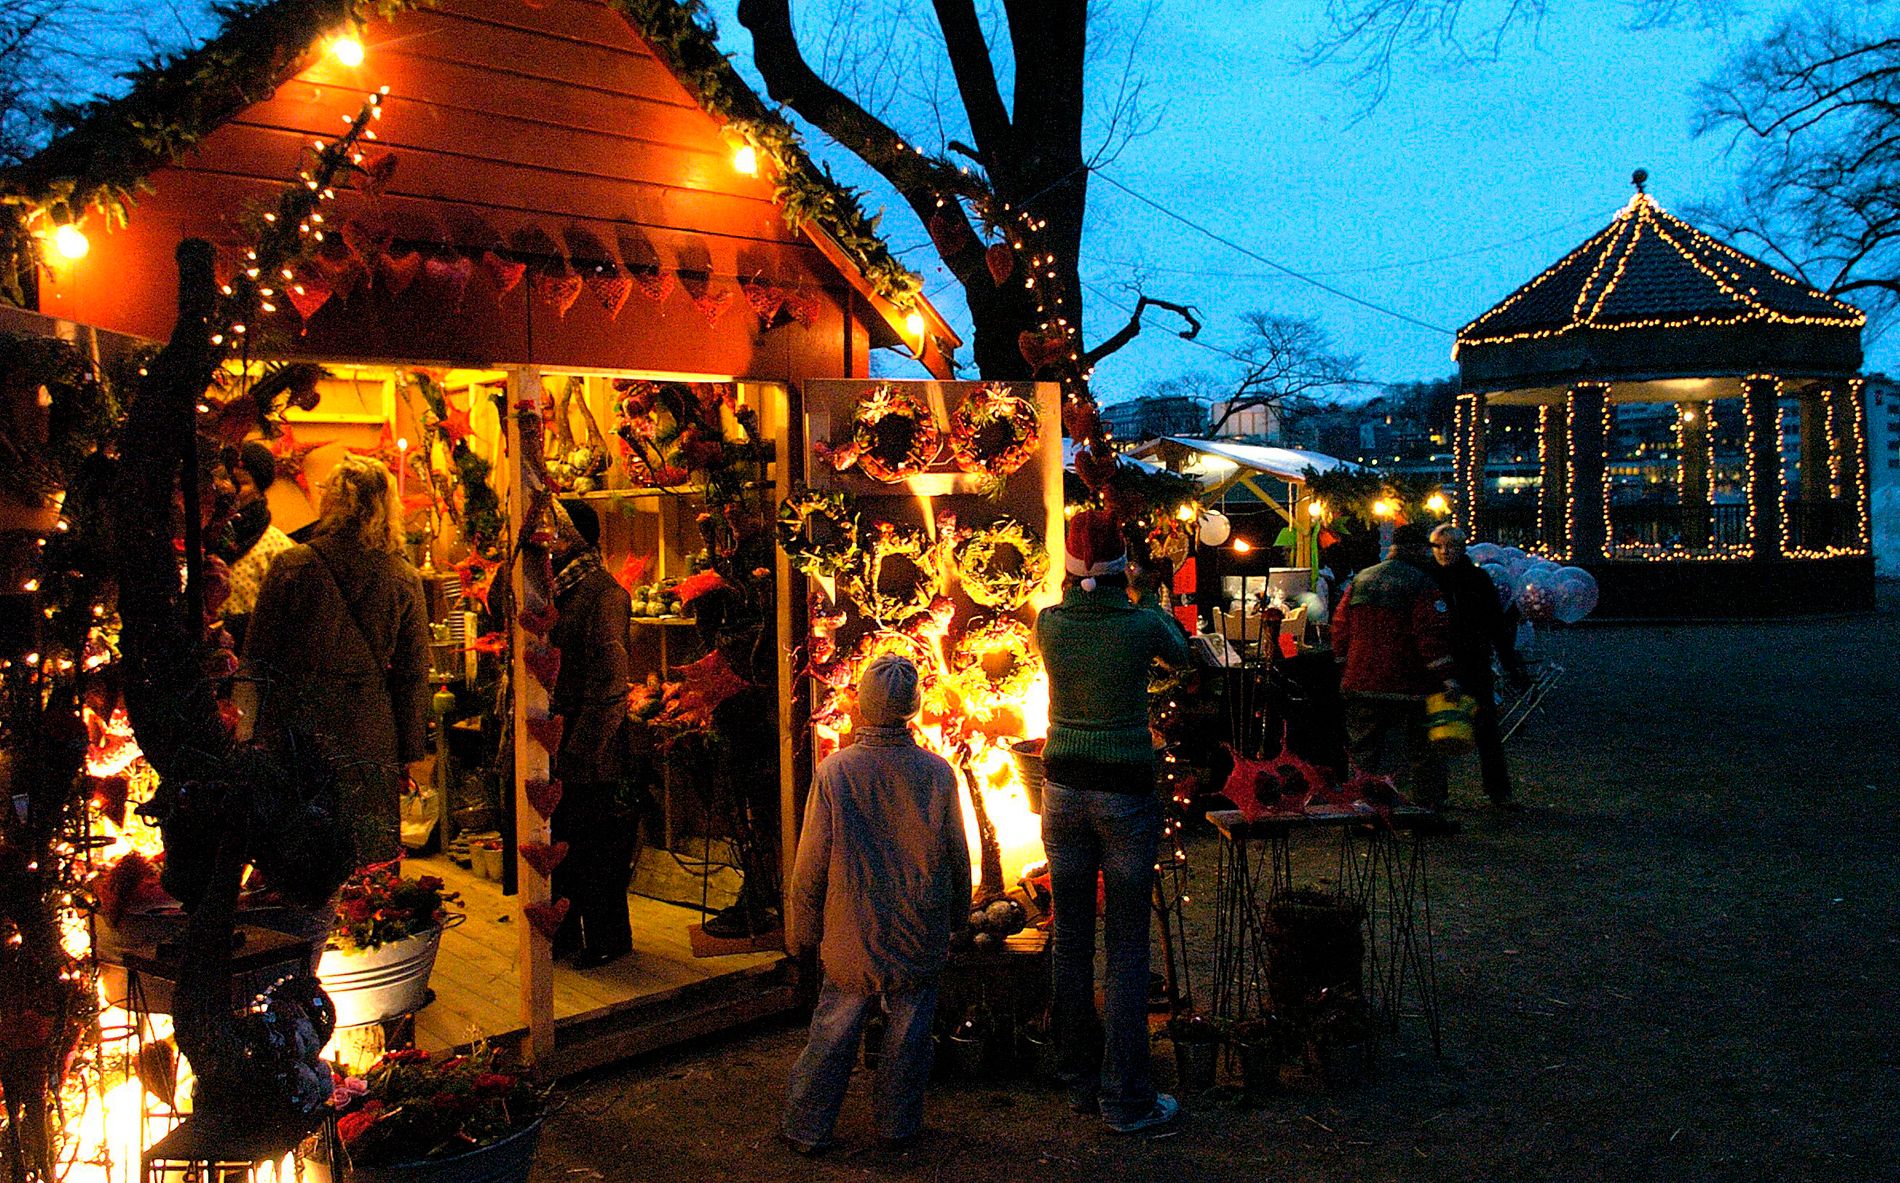 Julemarkedet i Byparken åpner lørdag. Det er flere år siden sist. 